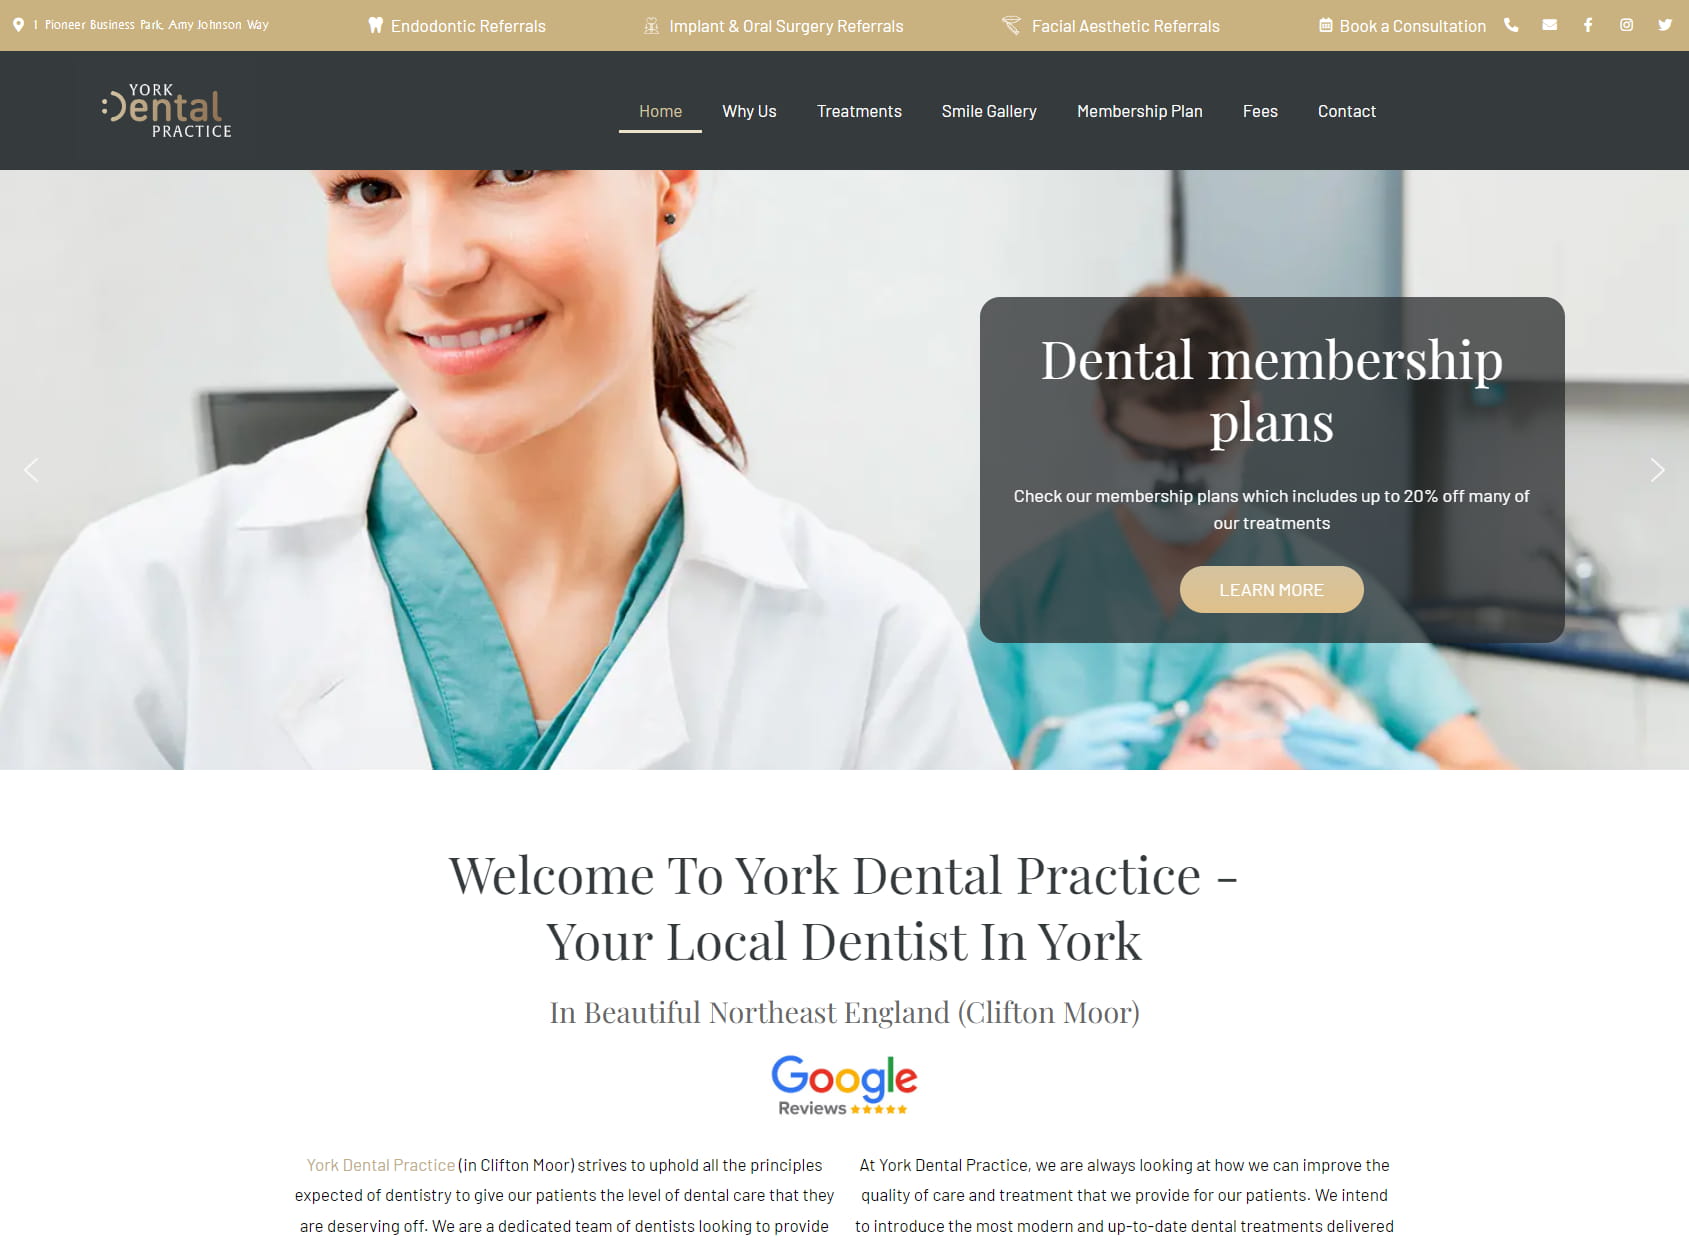 York Dental Practice